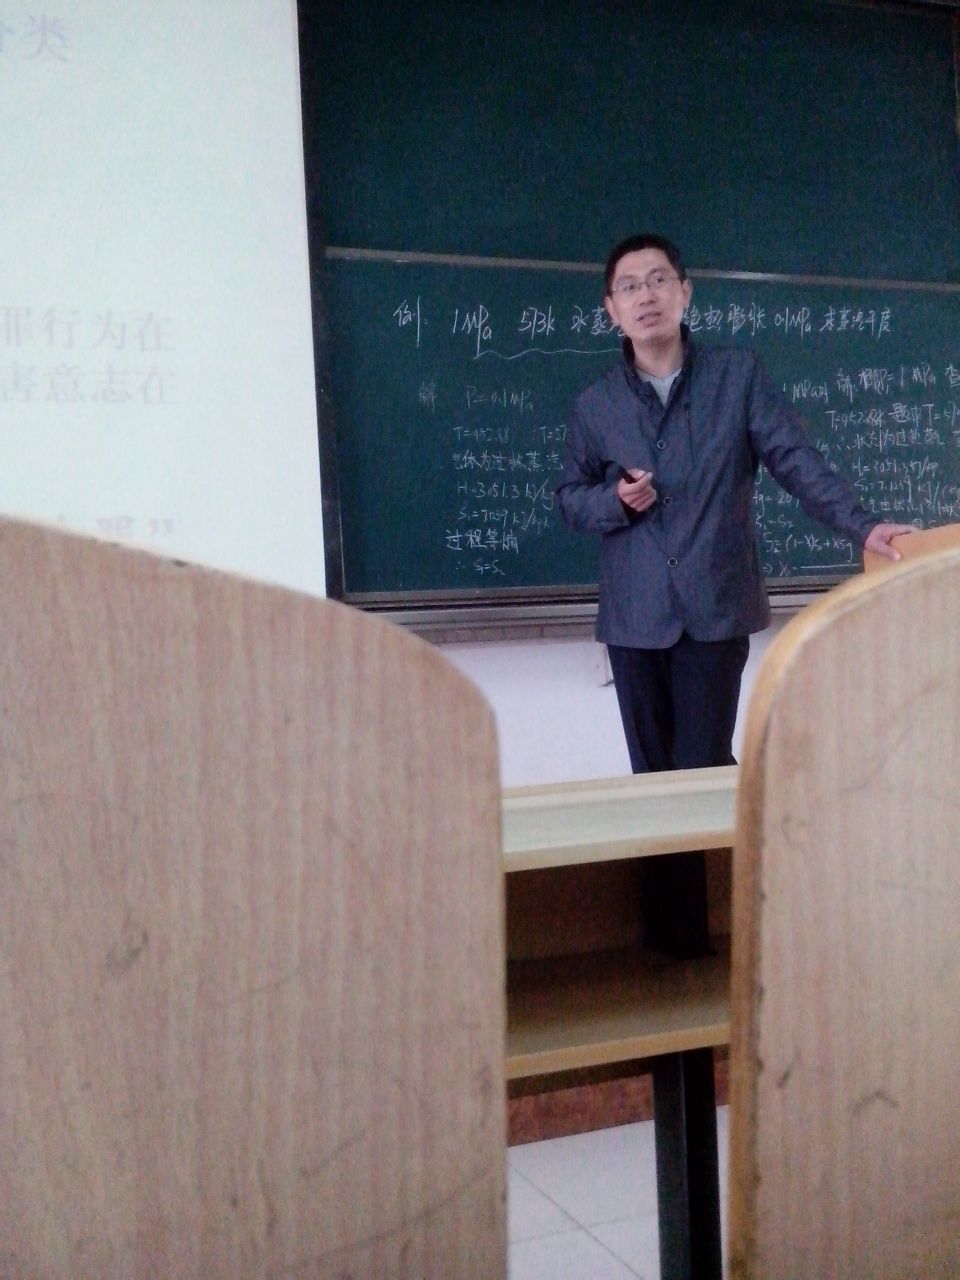 任廣志老師在講課